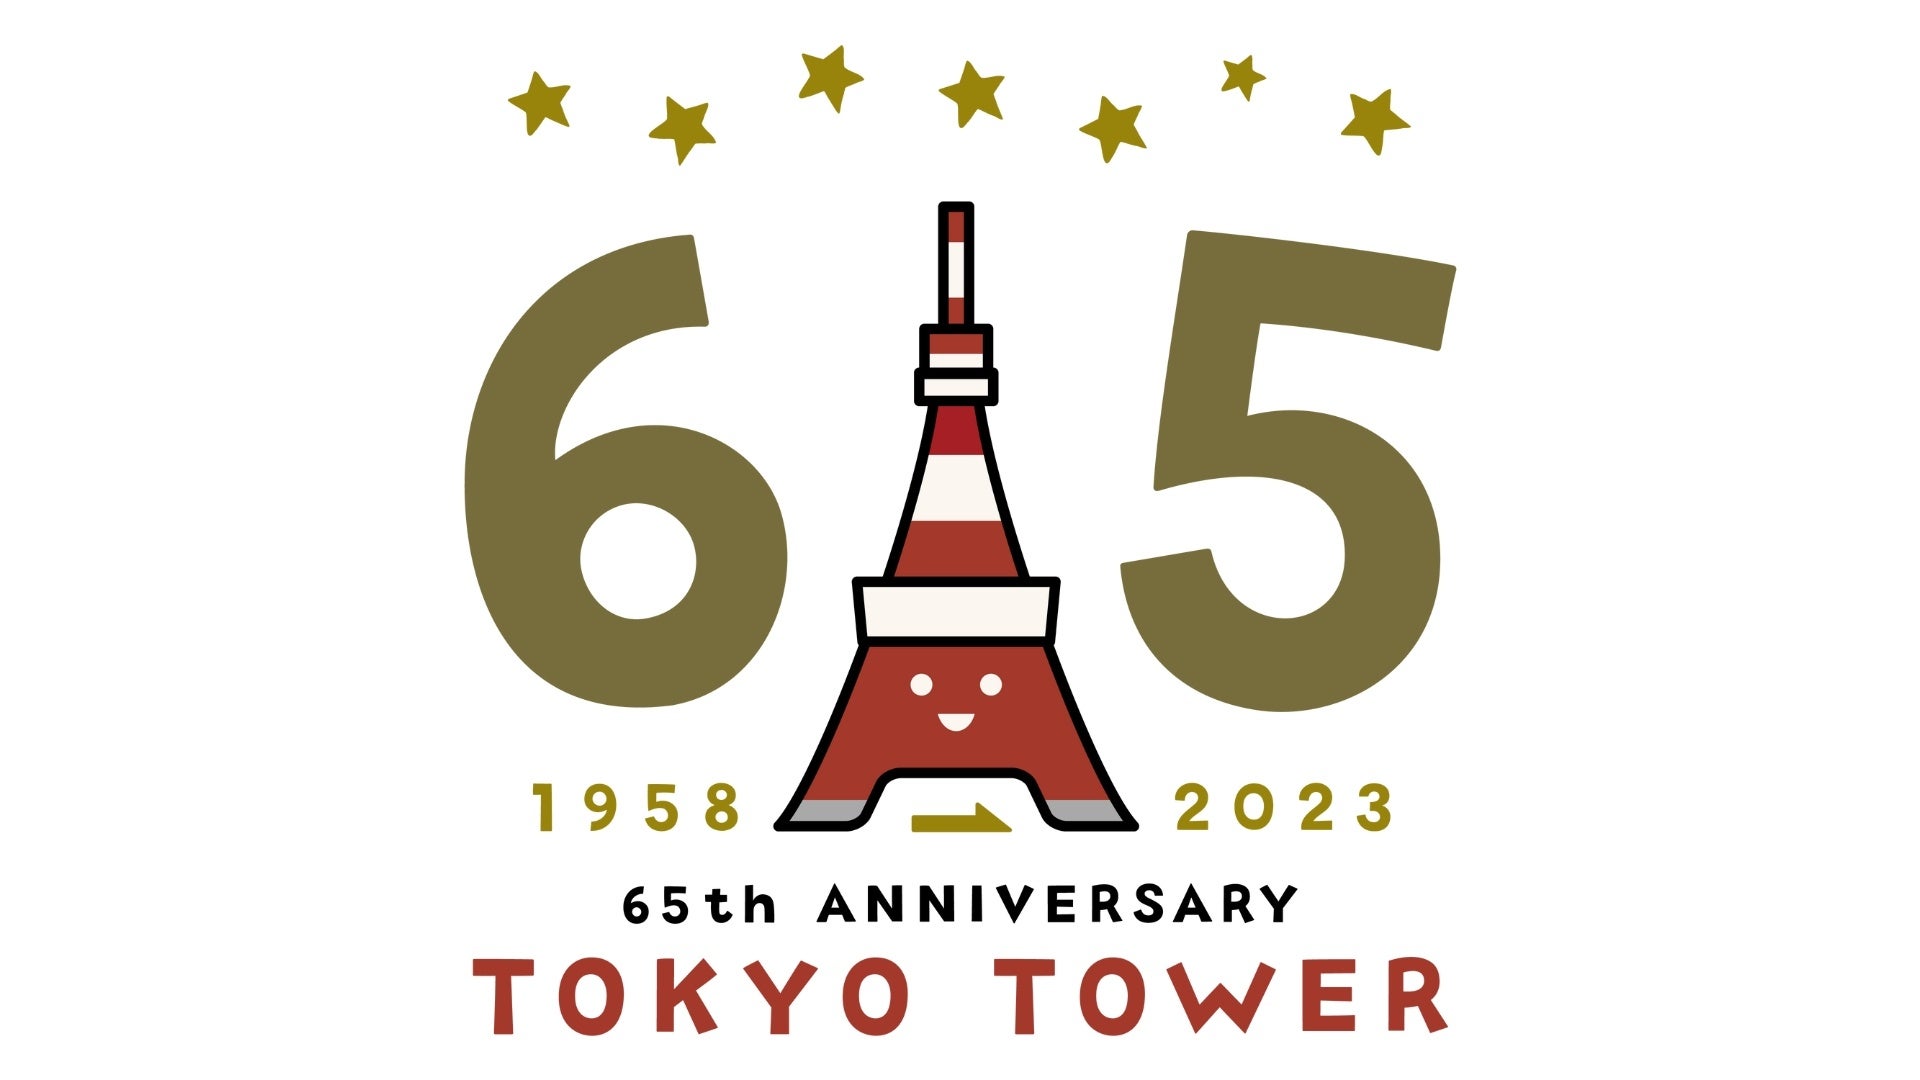 【販売開始】TOKYO TOWER 65th ANNIVERSARY！東京タワー開業65周年記念NFT企画をLINE NEXT社が提供する「DOSI...